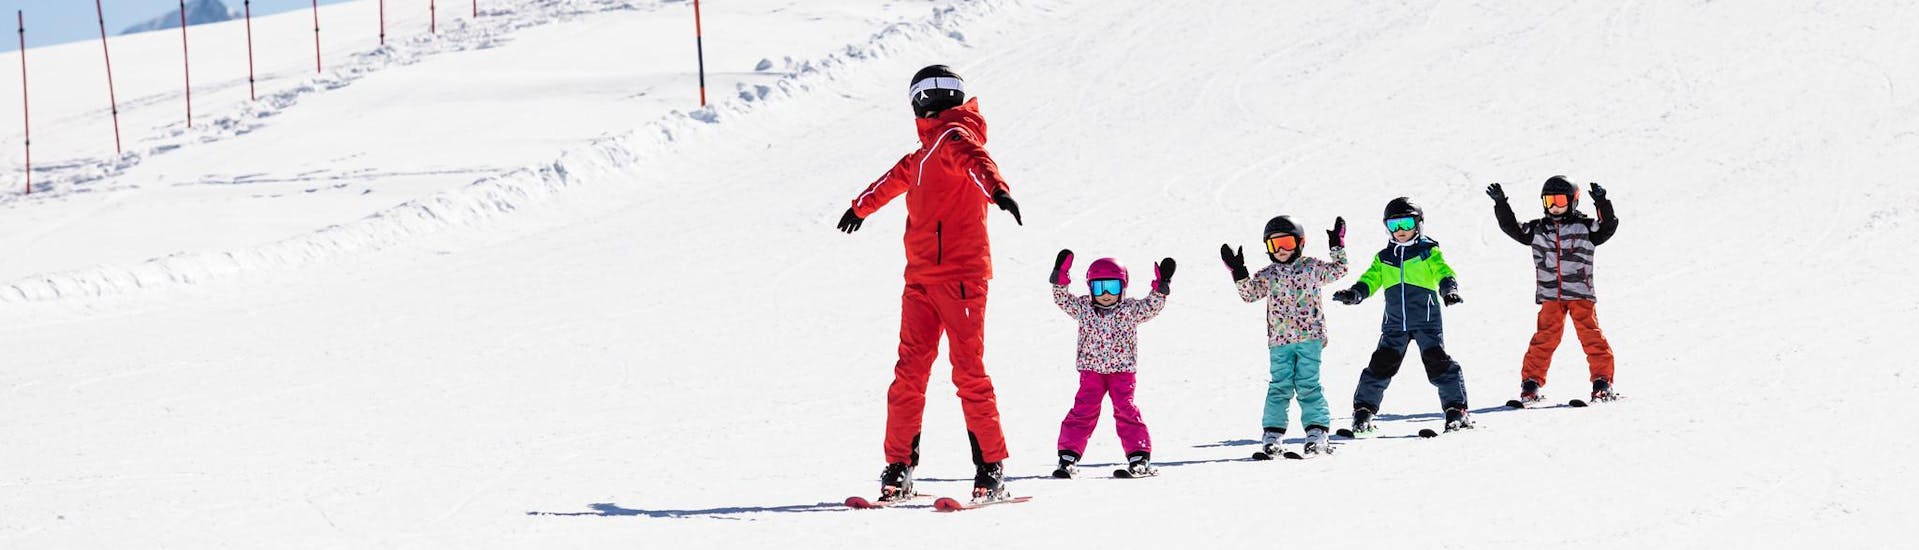 Moniteur de ski et enfants profitent d'une leçon de ski dans une école de ski près de Lausanne.